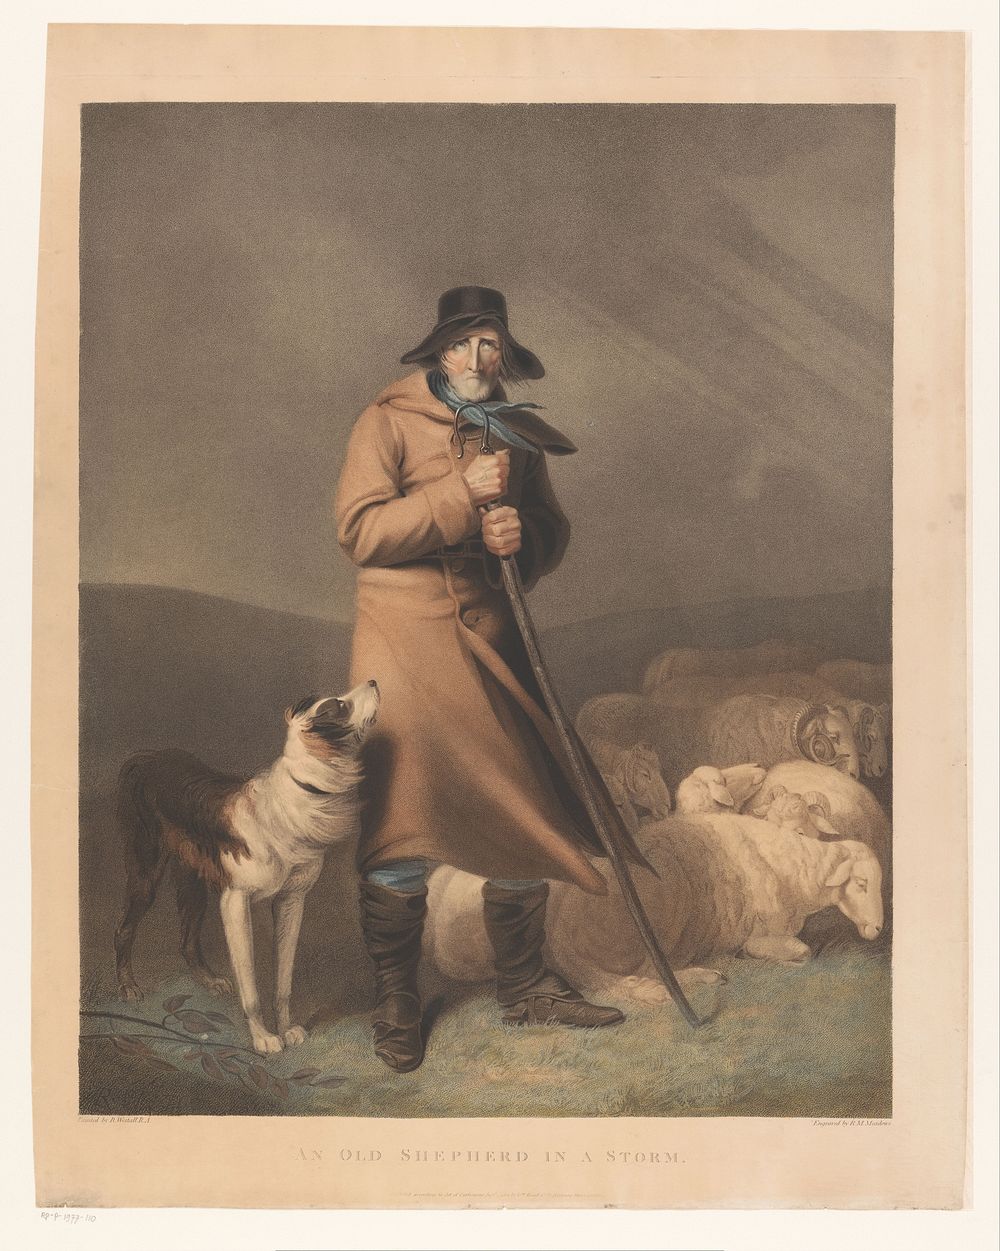 Herder met zijn hond en schapen (1802) by Robert Mitchell Meadows, Richard Westall and William Bond